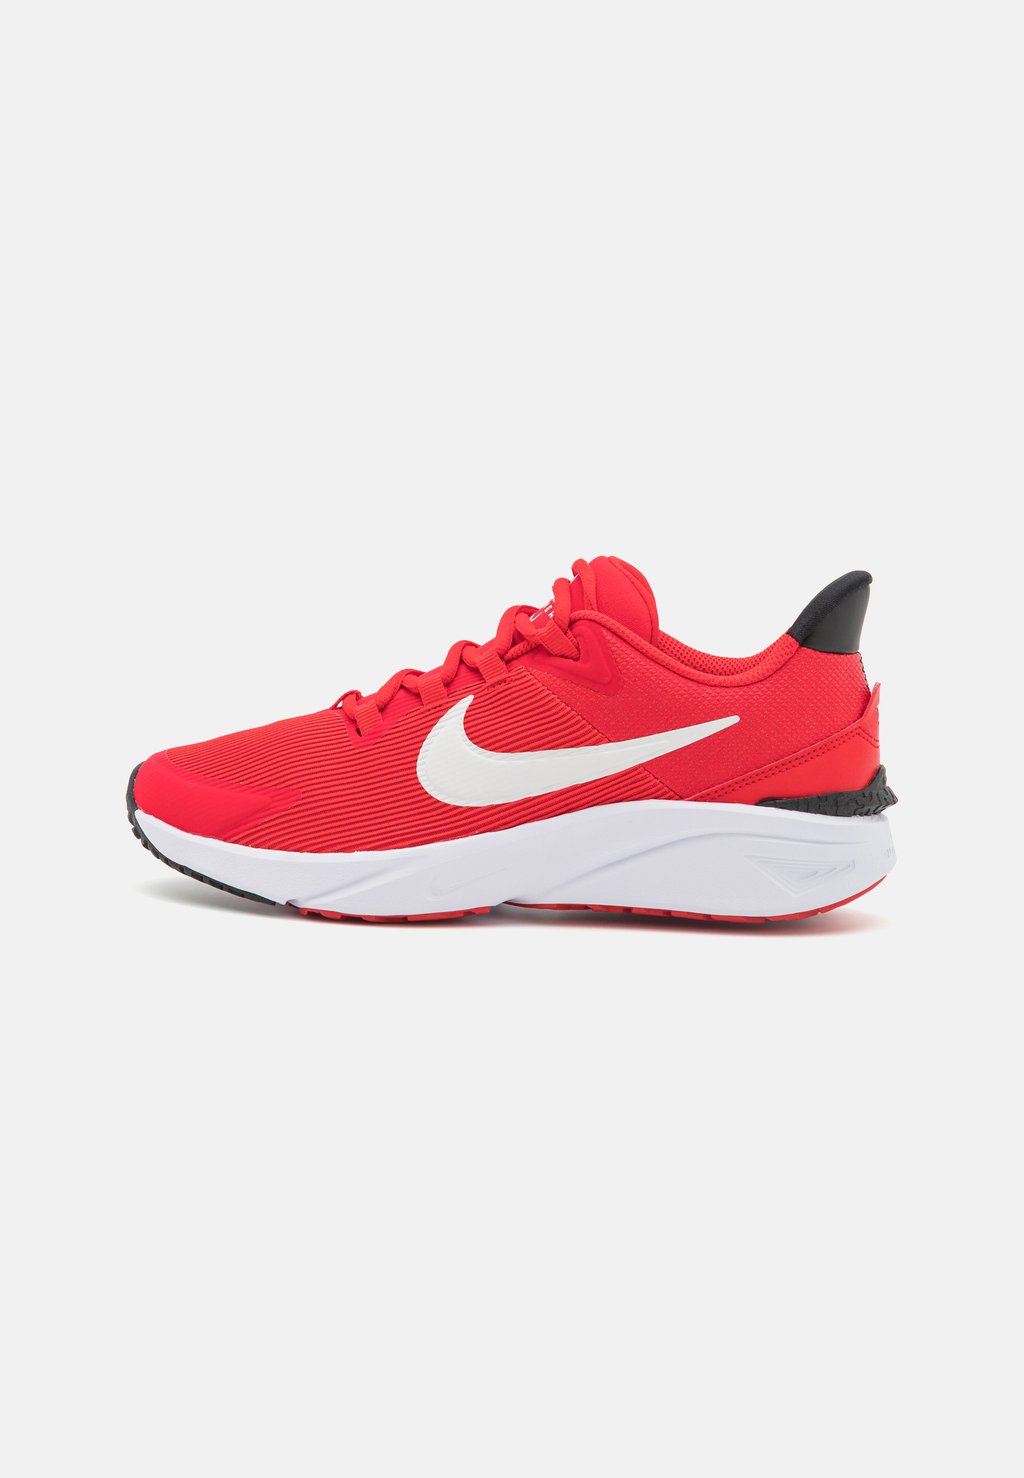 Нейтральные кроссовки Star Runner 4 Unisex Nike, цвет university red/summit white/black/white